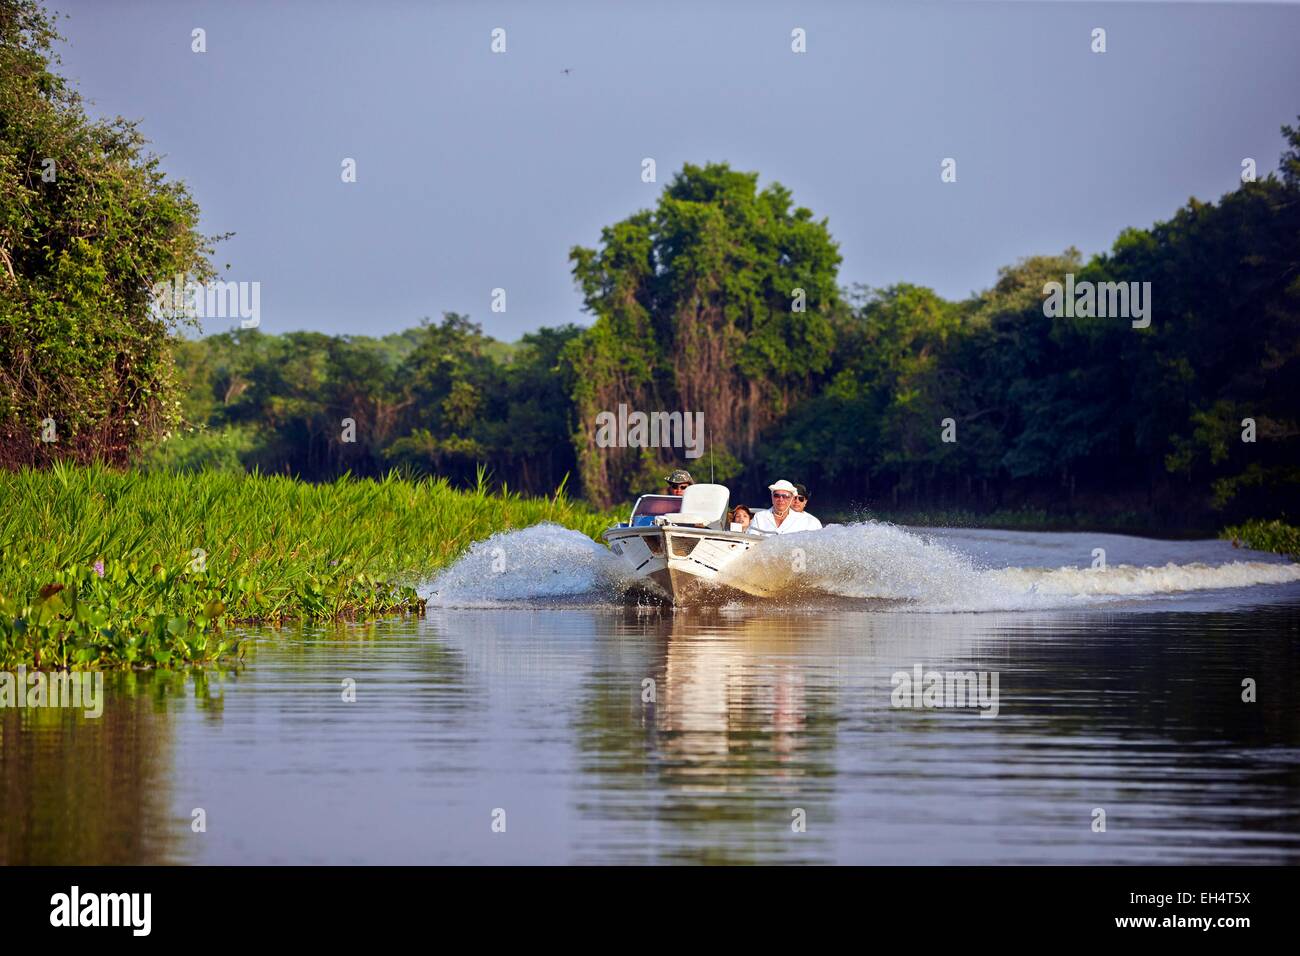 Brasilien, Mato Grosso, Pantanal-Region, Fluss Cuiaba, schwarzer Kanal, Boot mit Touristen auf der Suche nach jaguar Stockfoto